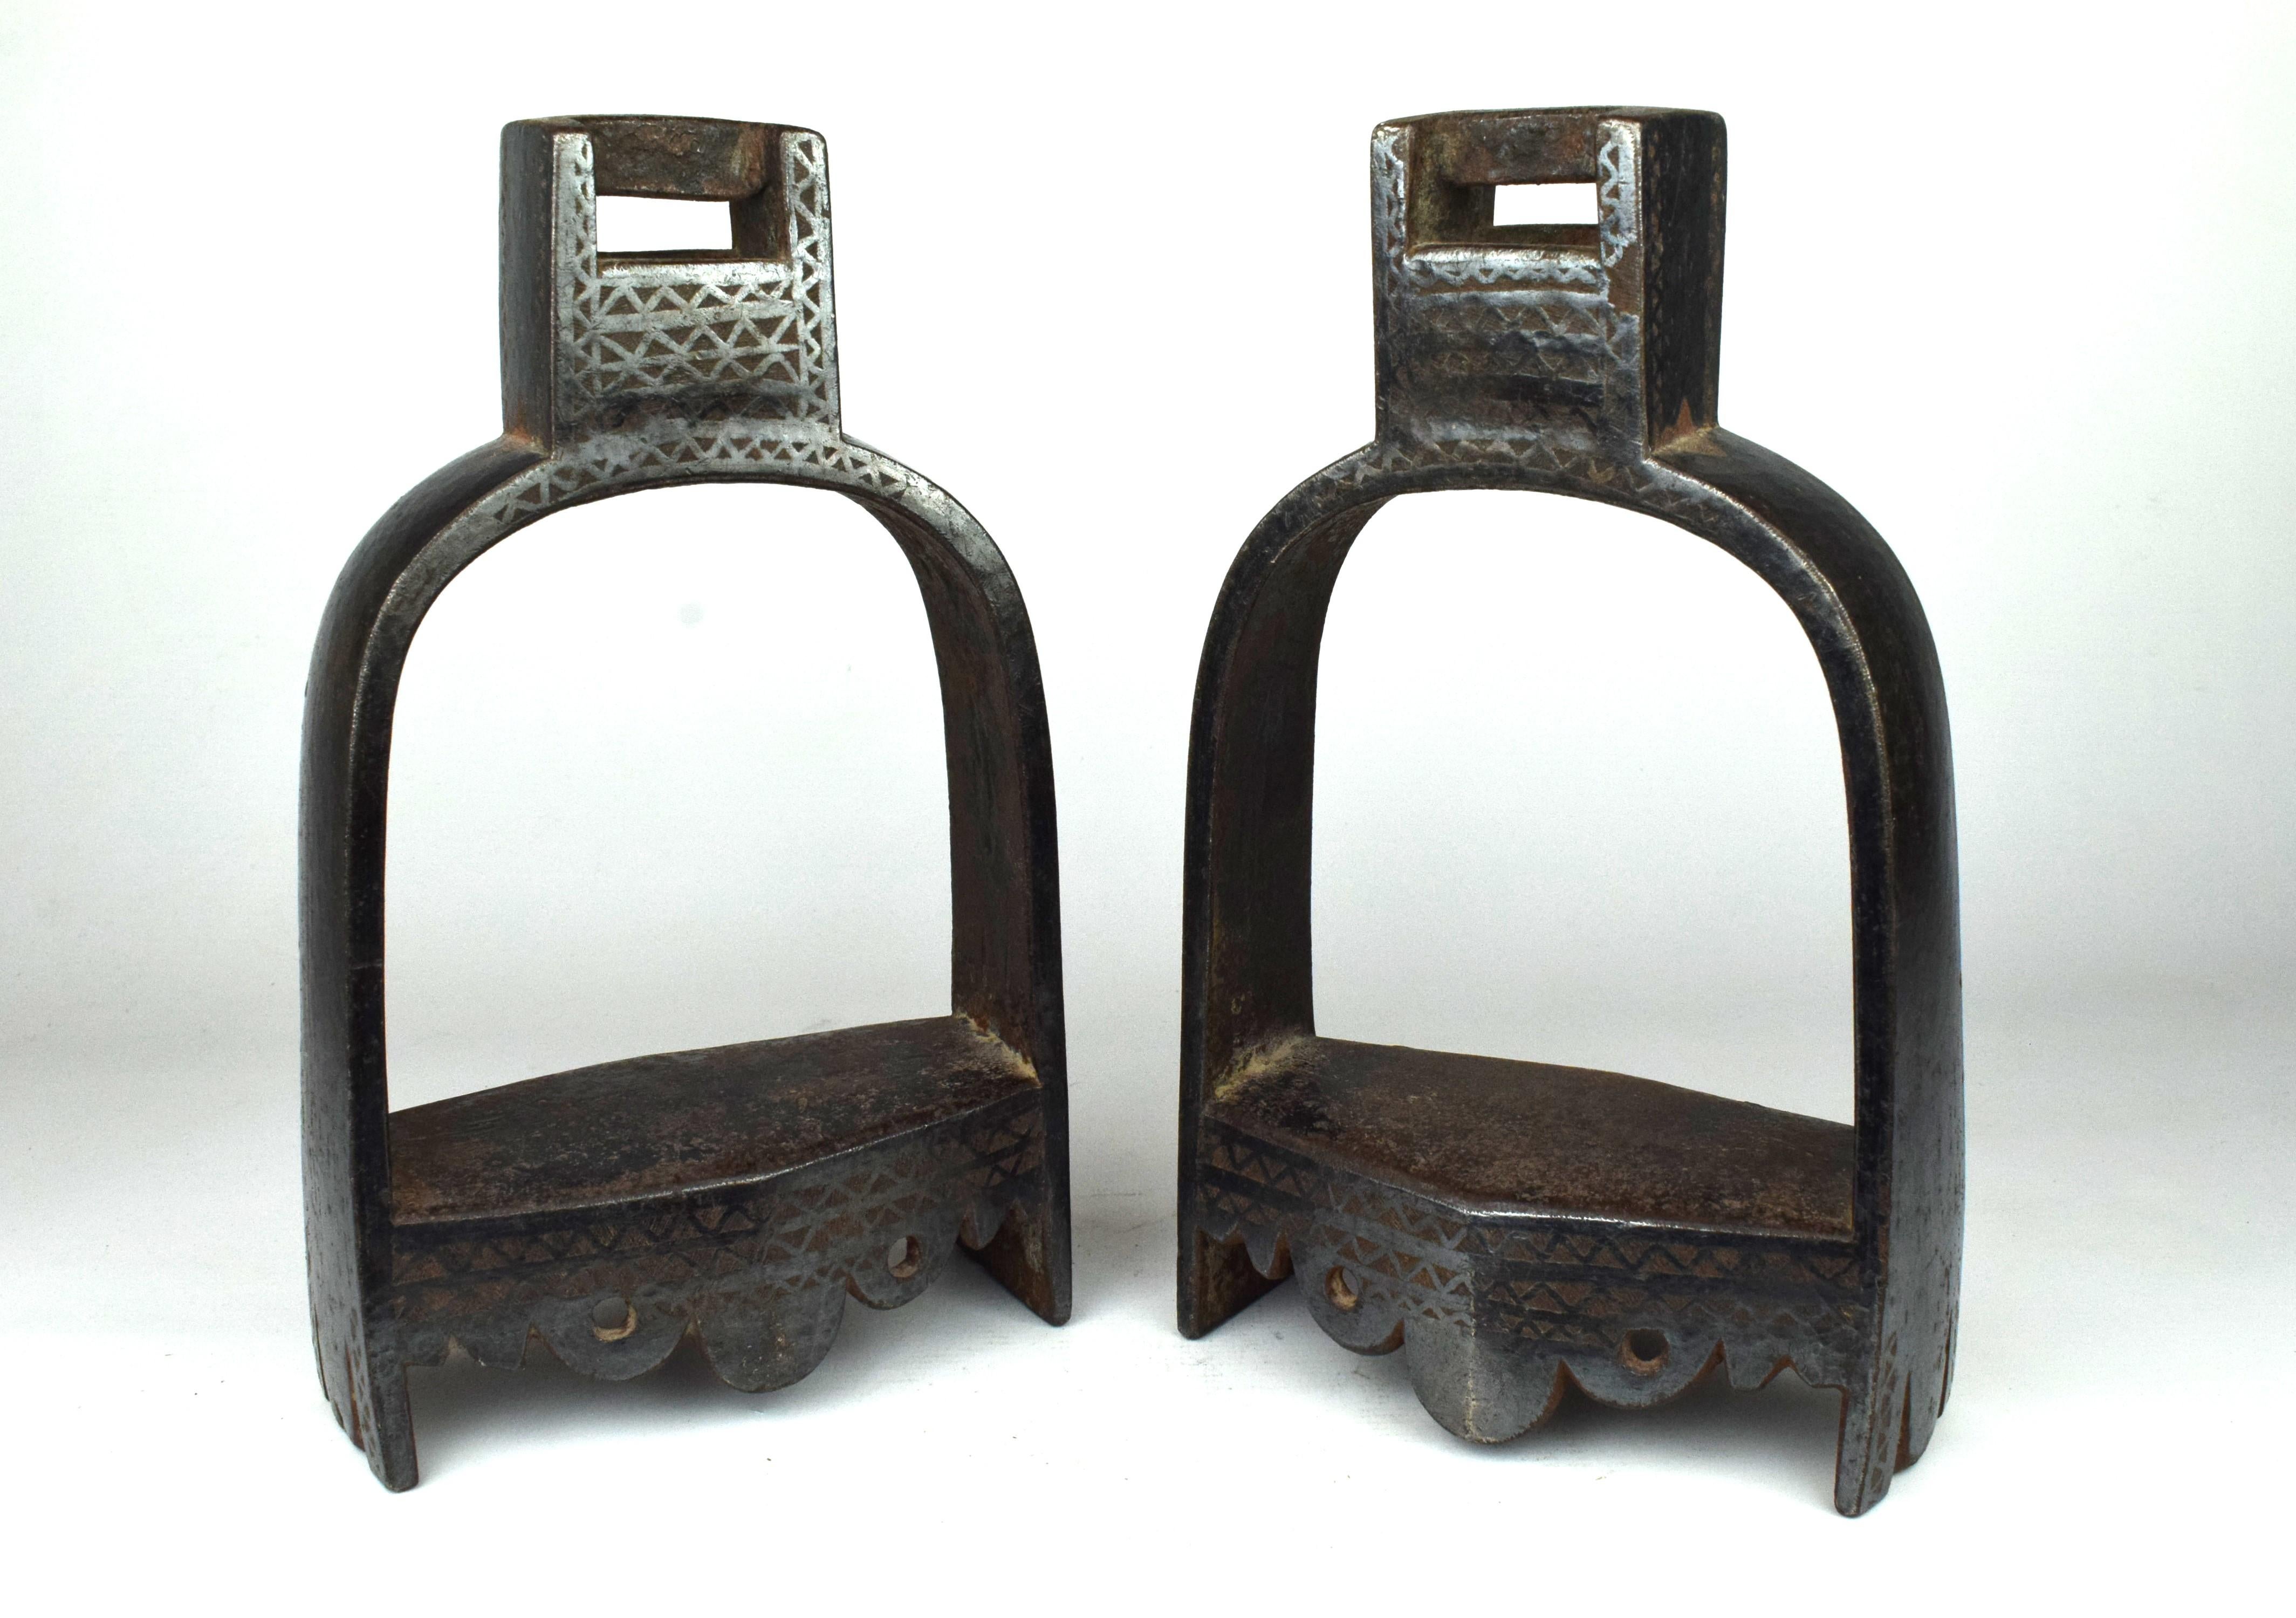 Das Paar Mogul-Pferdebügel aus Metall mit Silbereinlage aus dem 19. Jahrhundert ist ein eindrucksvolles Beispiel für die Reitausrüstung, das die Kunstfertigkeit und das handwerkliche Können der Mogulzeit widerspiegelt.

Die Steigbügel sind aus einem